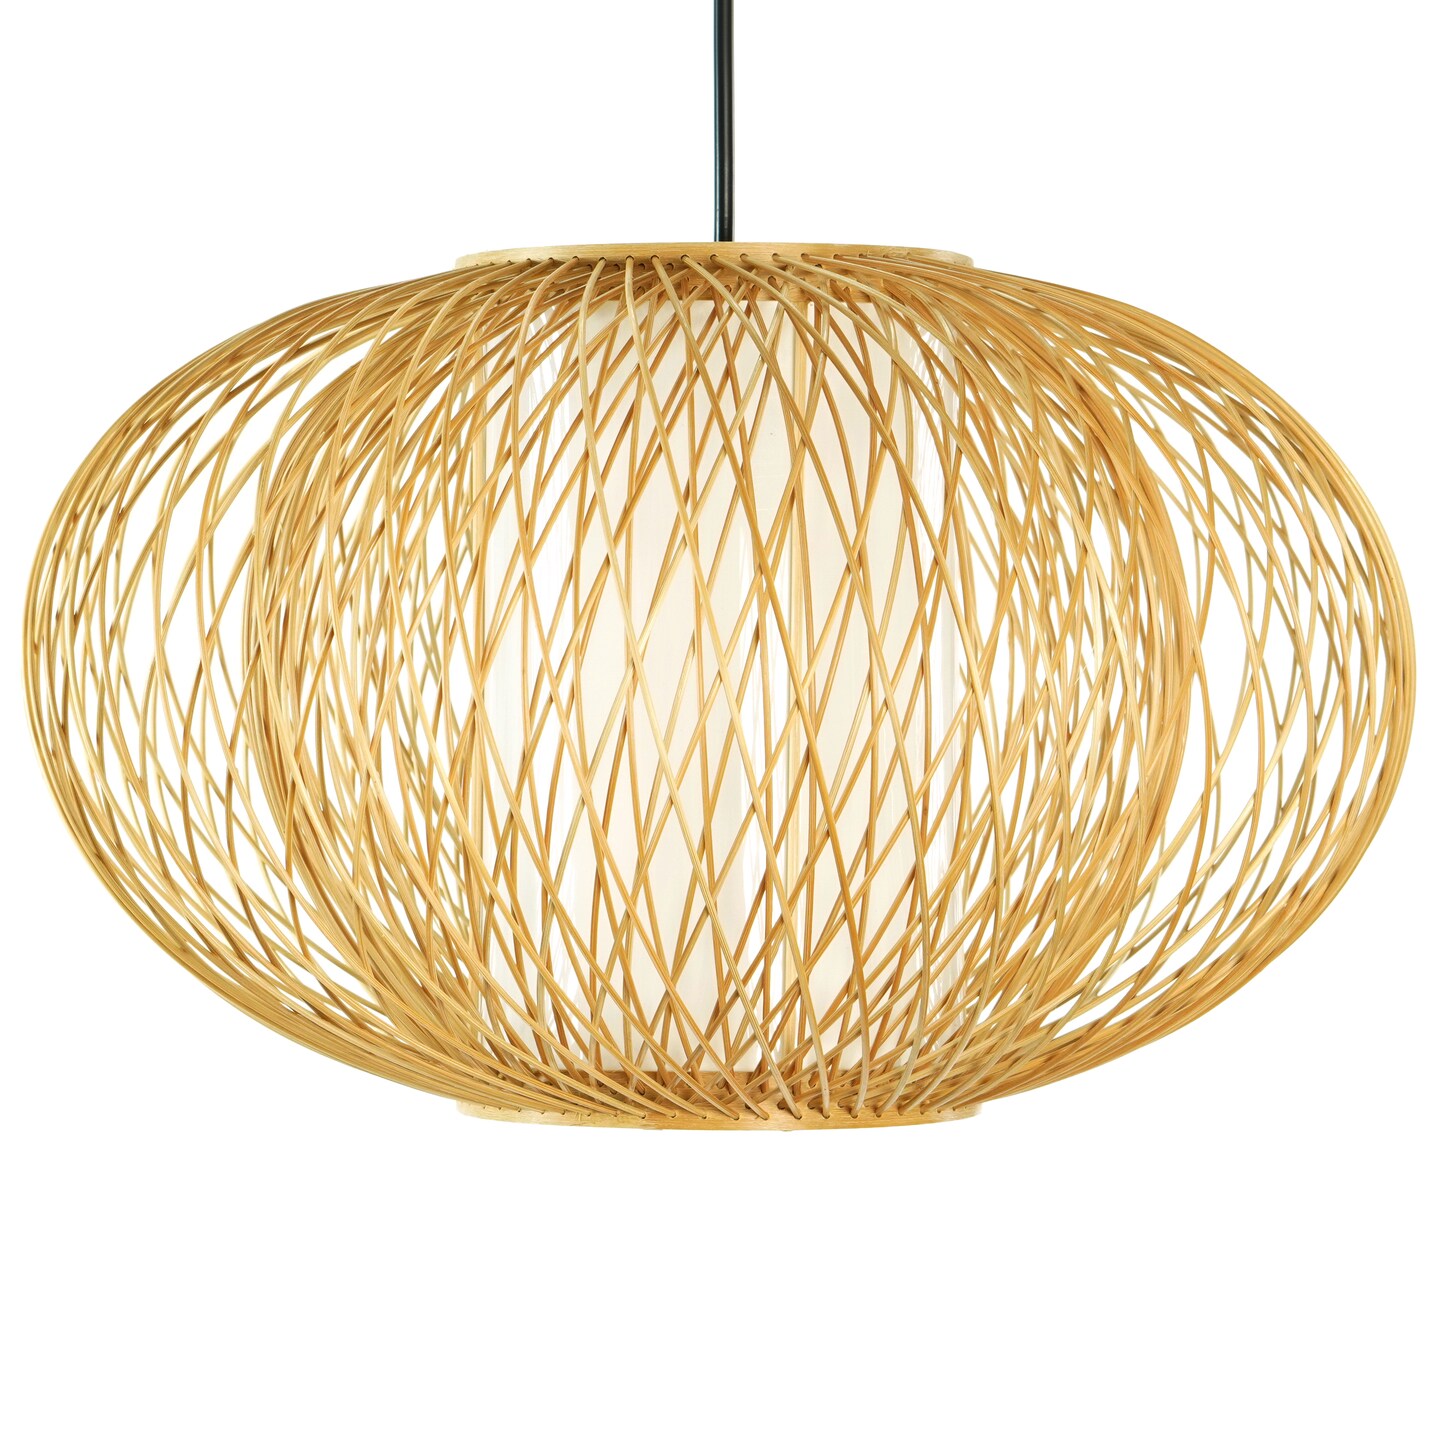 Handmade Modern Round Bamboo Wicker Rattan Lamp Hanging Light Shade